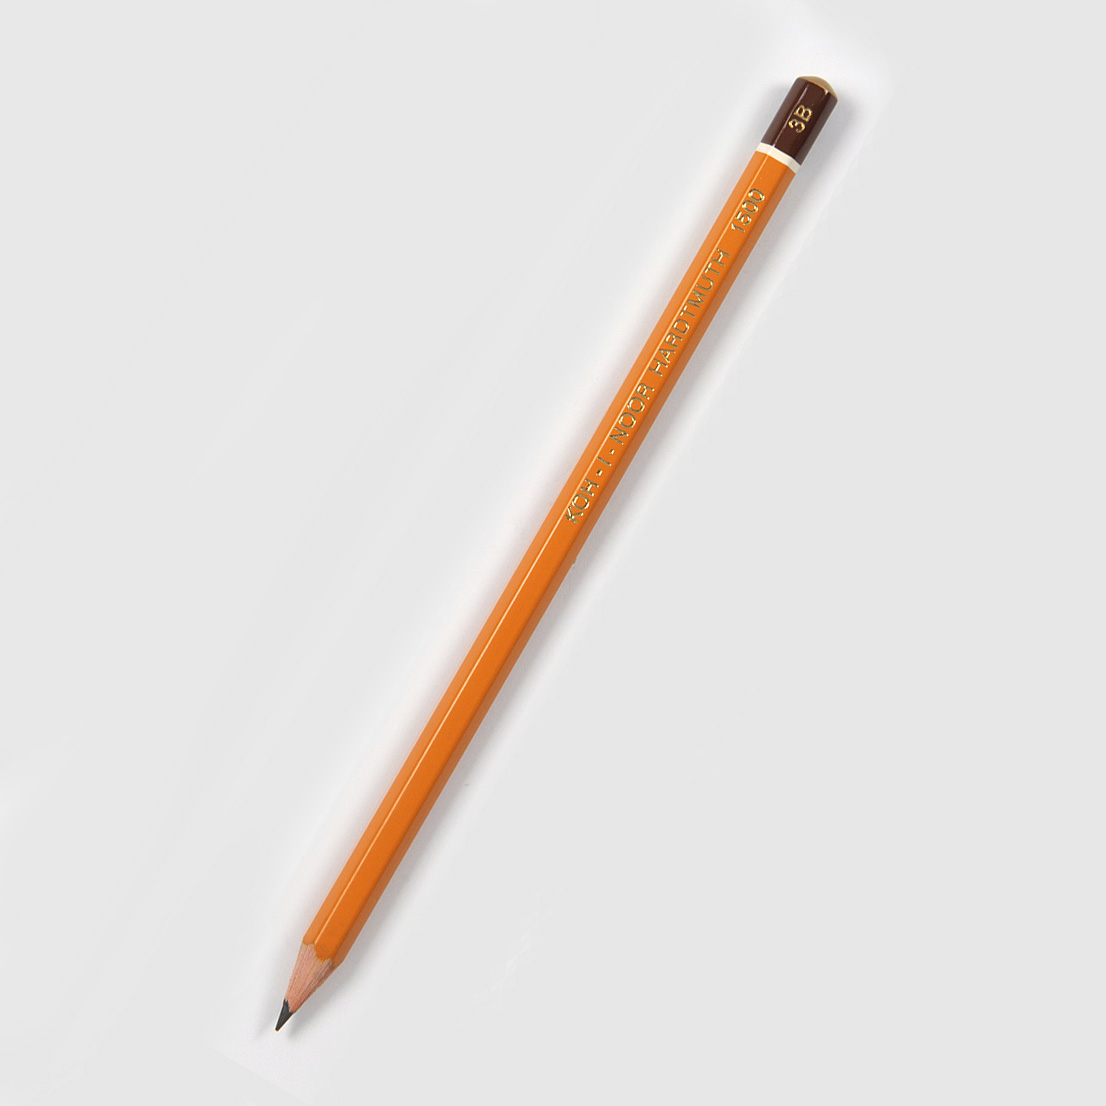 Grafitová tužka Koh-i-noor 1500, 3B, šestihranná